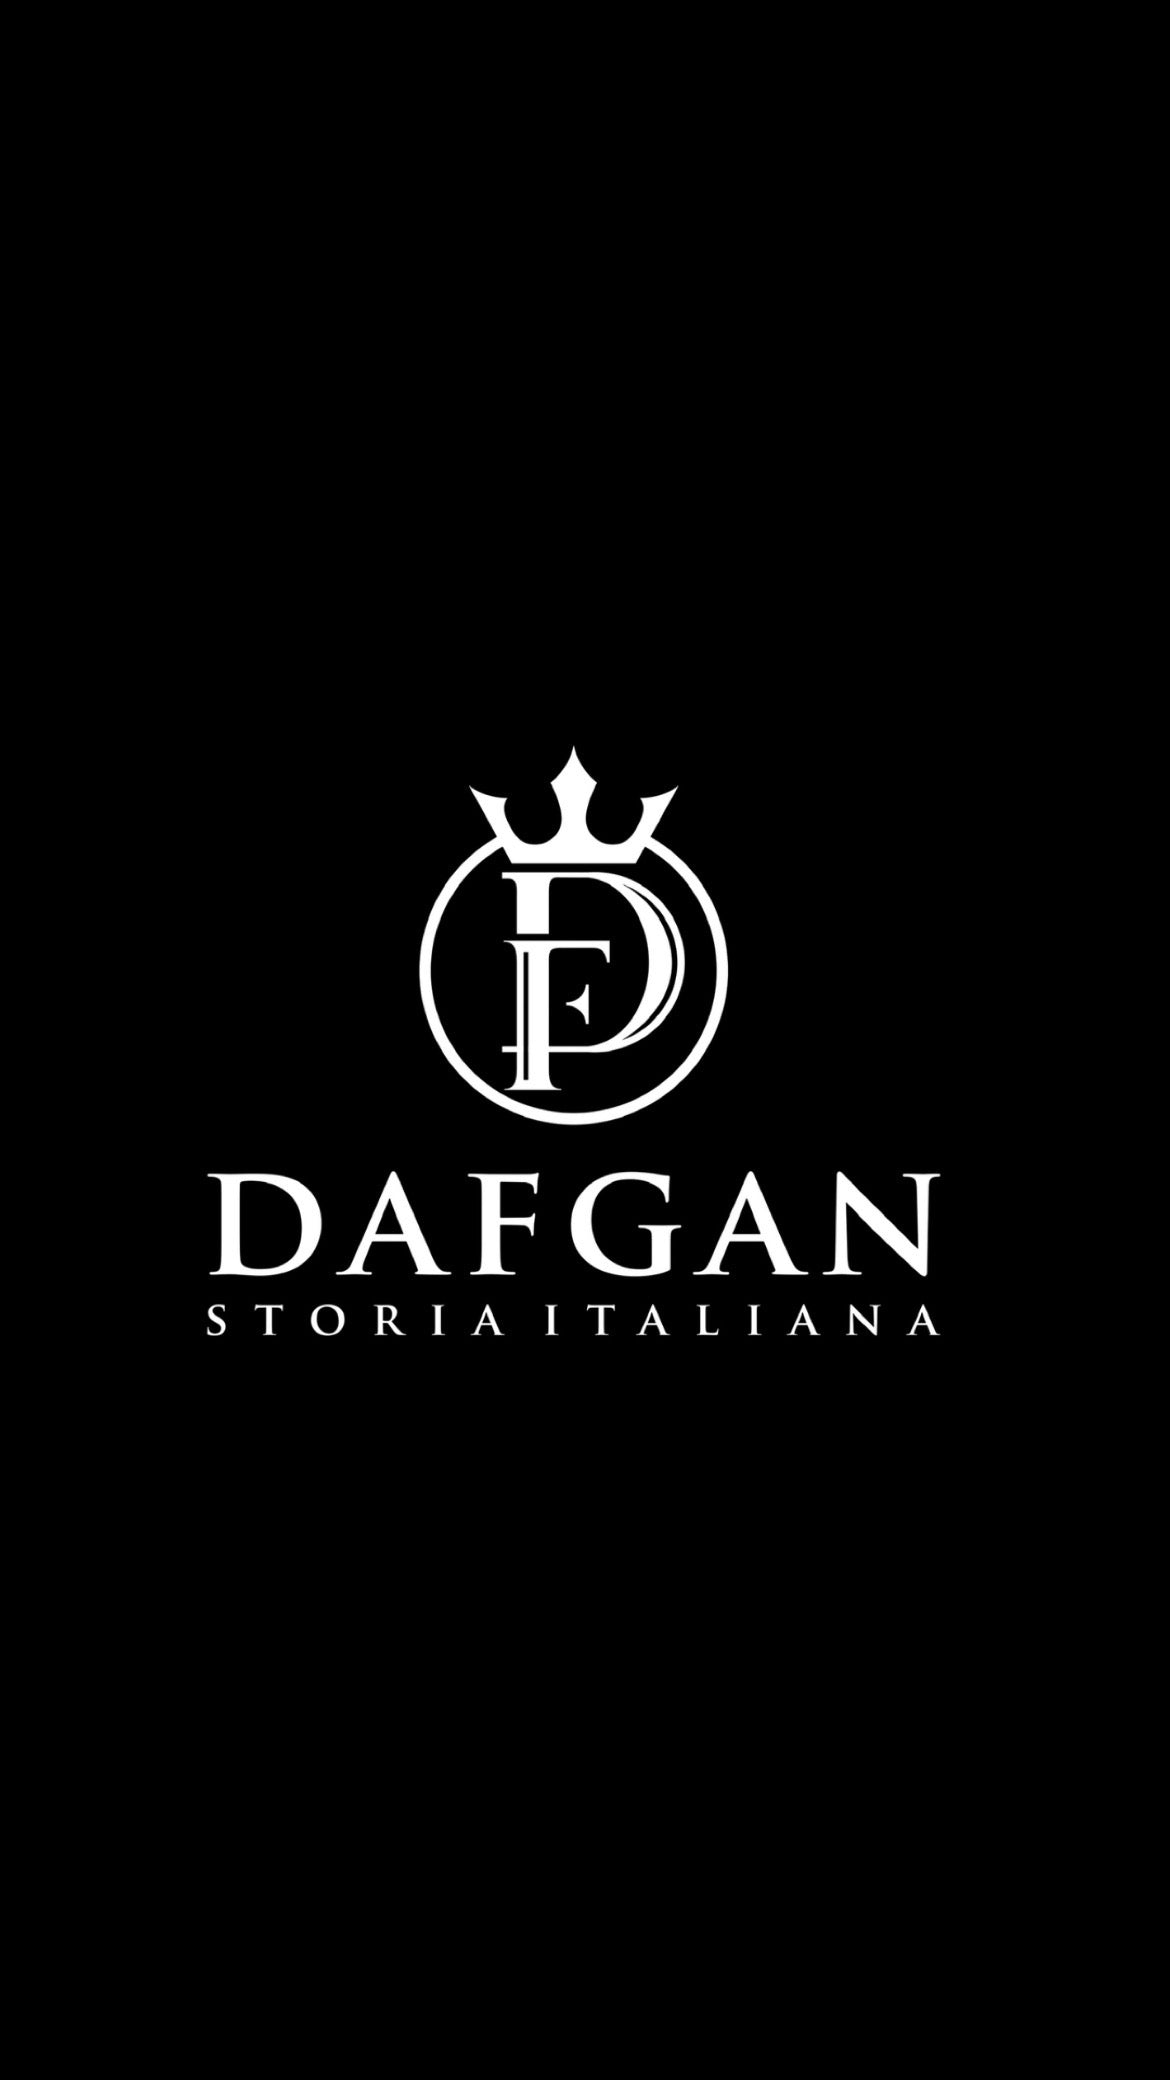 Dafgan Storia Italiana